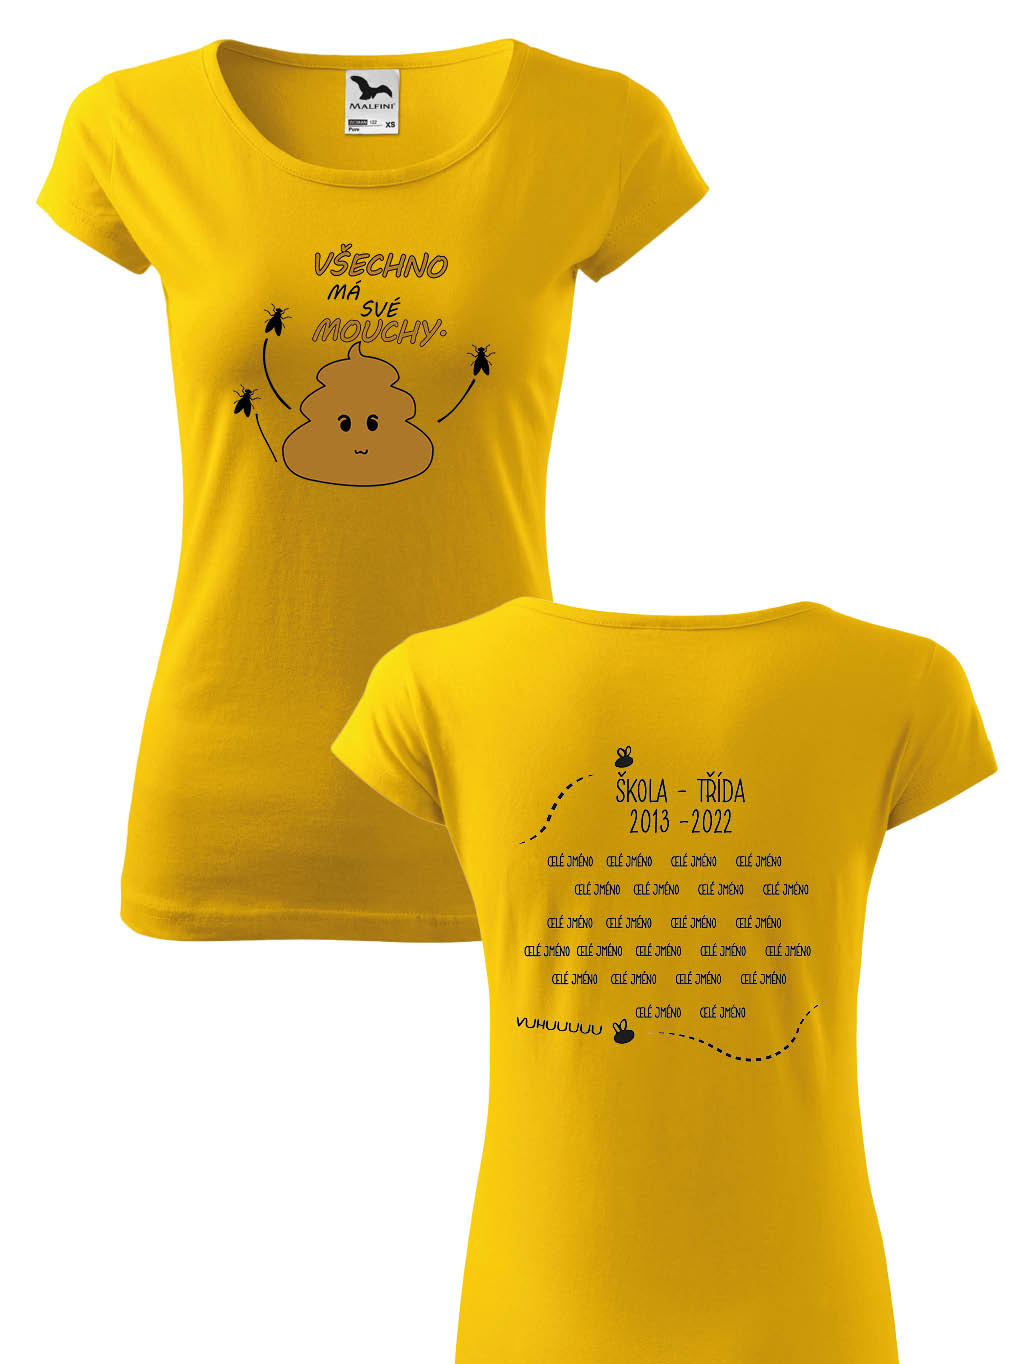 Školní tričko Všechno má své mouchy Pohlaví: Dámské tričko, Barva textilu: Žlutá